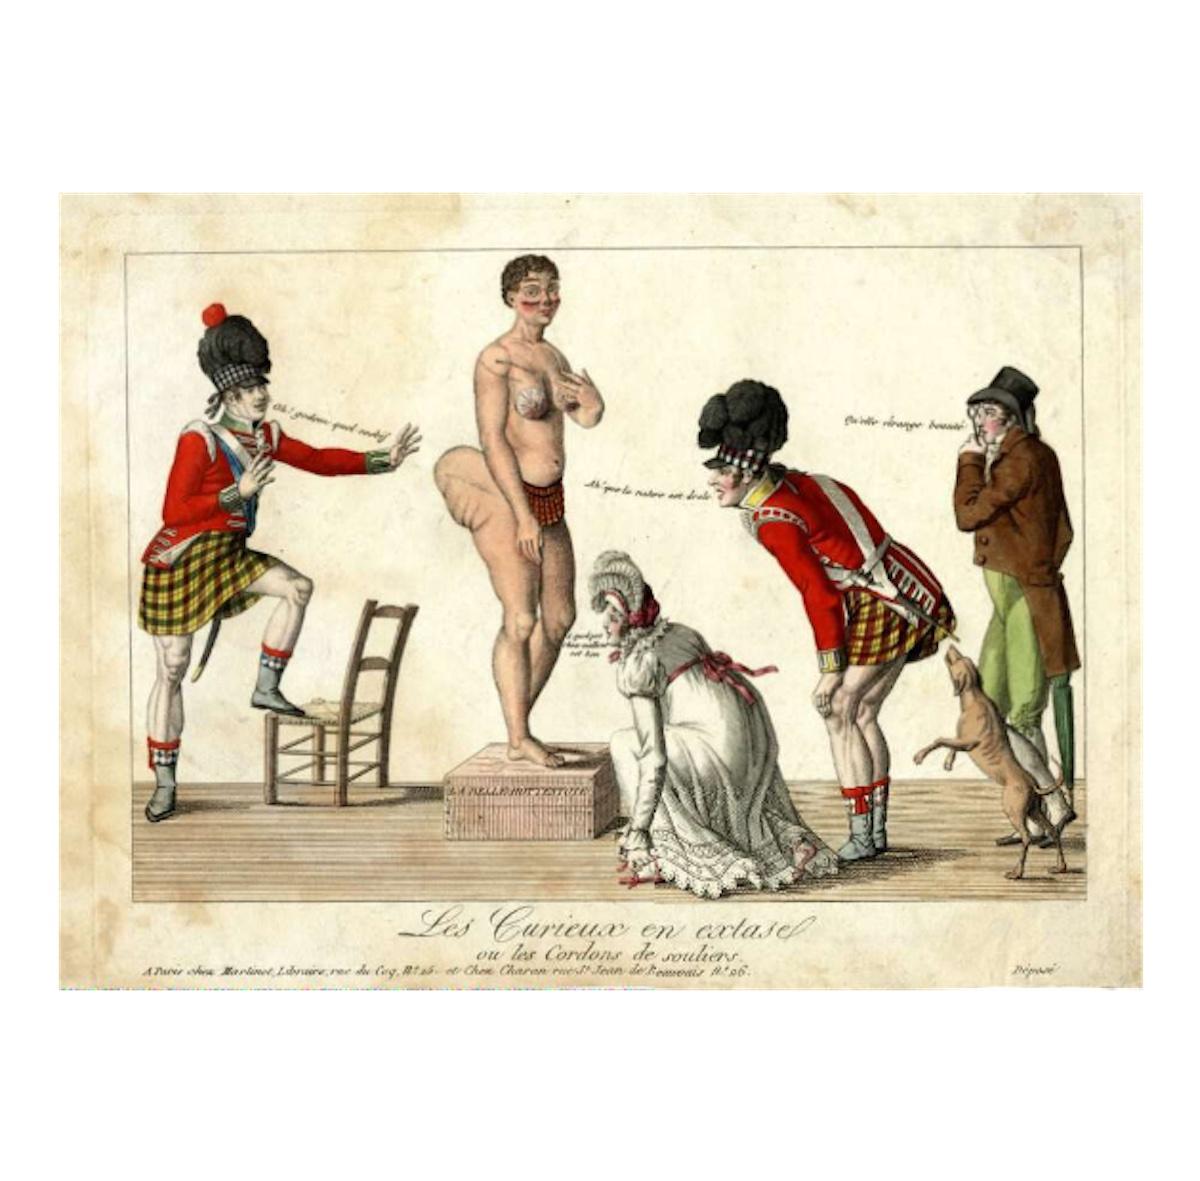 Louis François Charon, Les curieux en extase, ou les cordons de souliers, 1815. Pigment on paper, The British Museum, London.